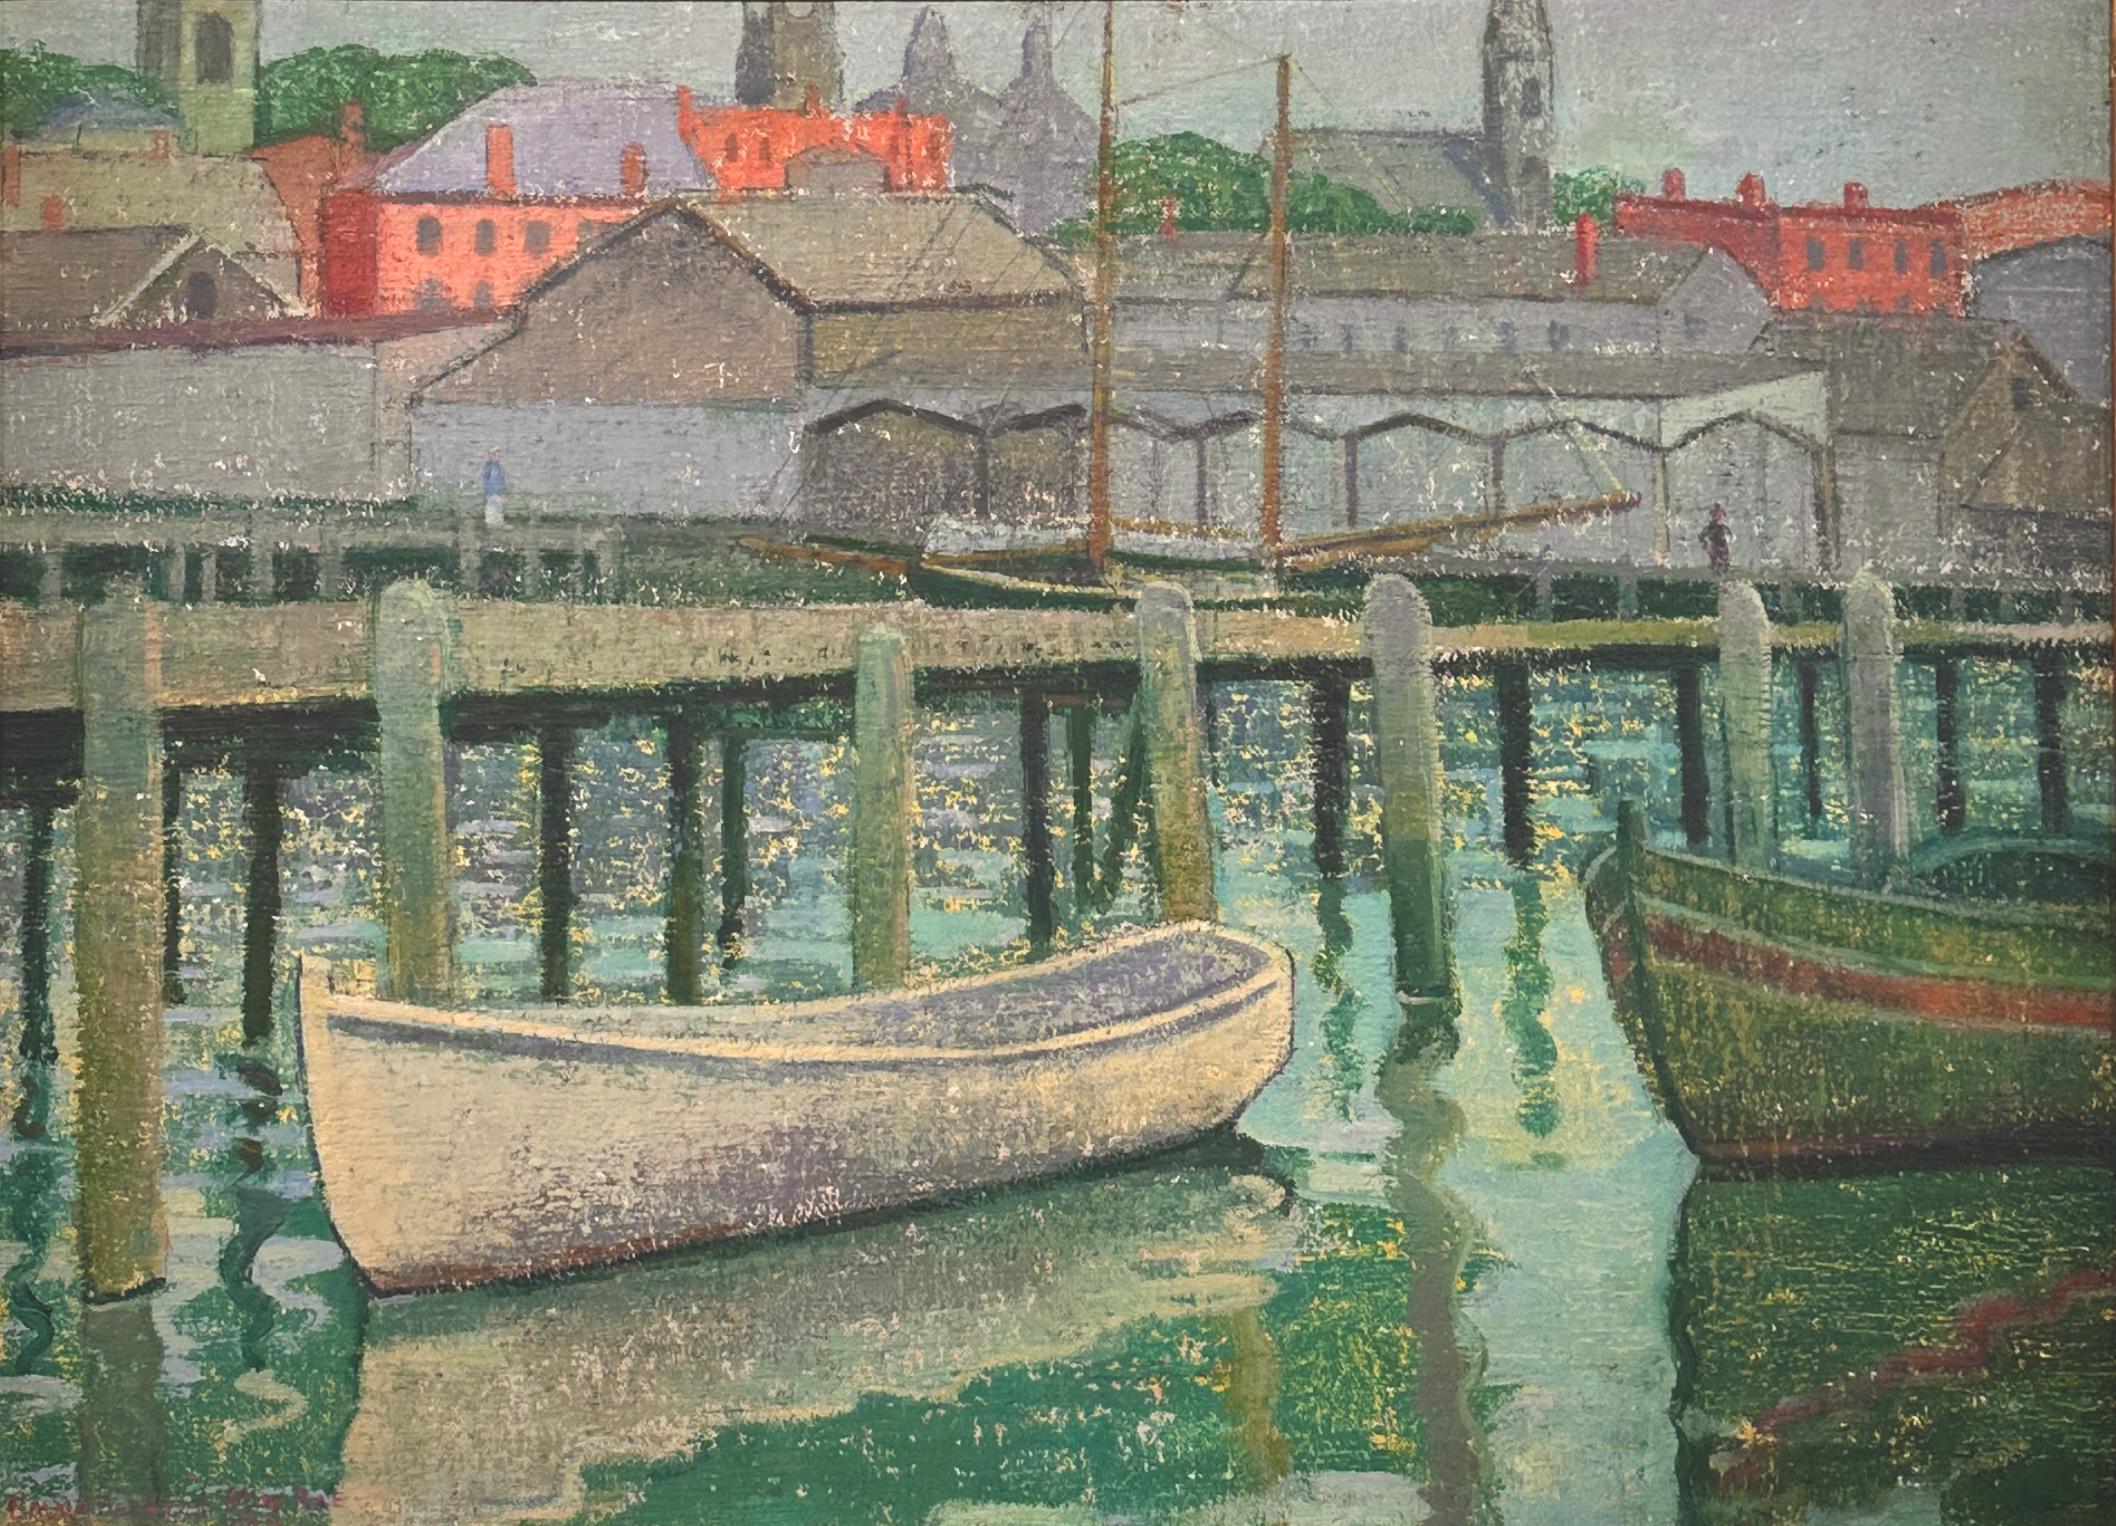 Emma Fordyce MacRae Landscape Painting - “The White Boat", Gloucester, Massachusetts, dock scene by famous female artist